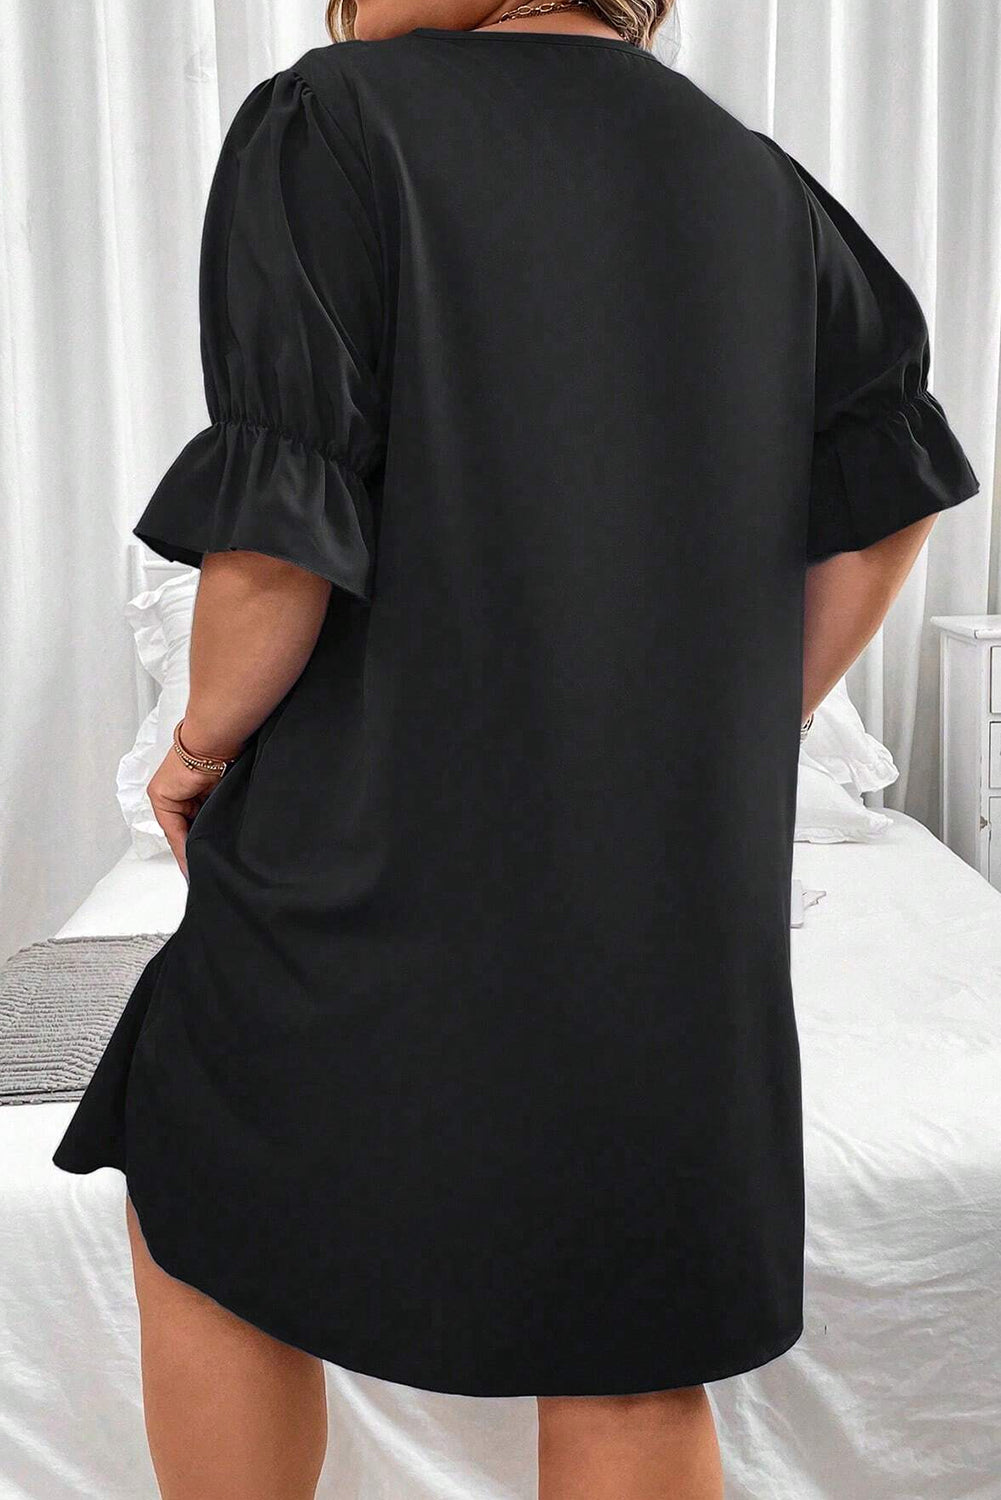 Schwarzes, einfarbiges, gerüschtes Minikleid mit V-Ausschnitt und Puffärmeln in Übergröße